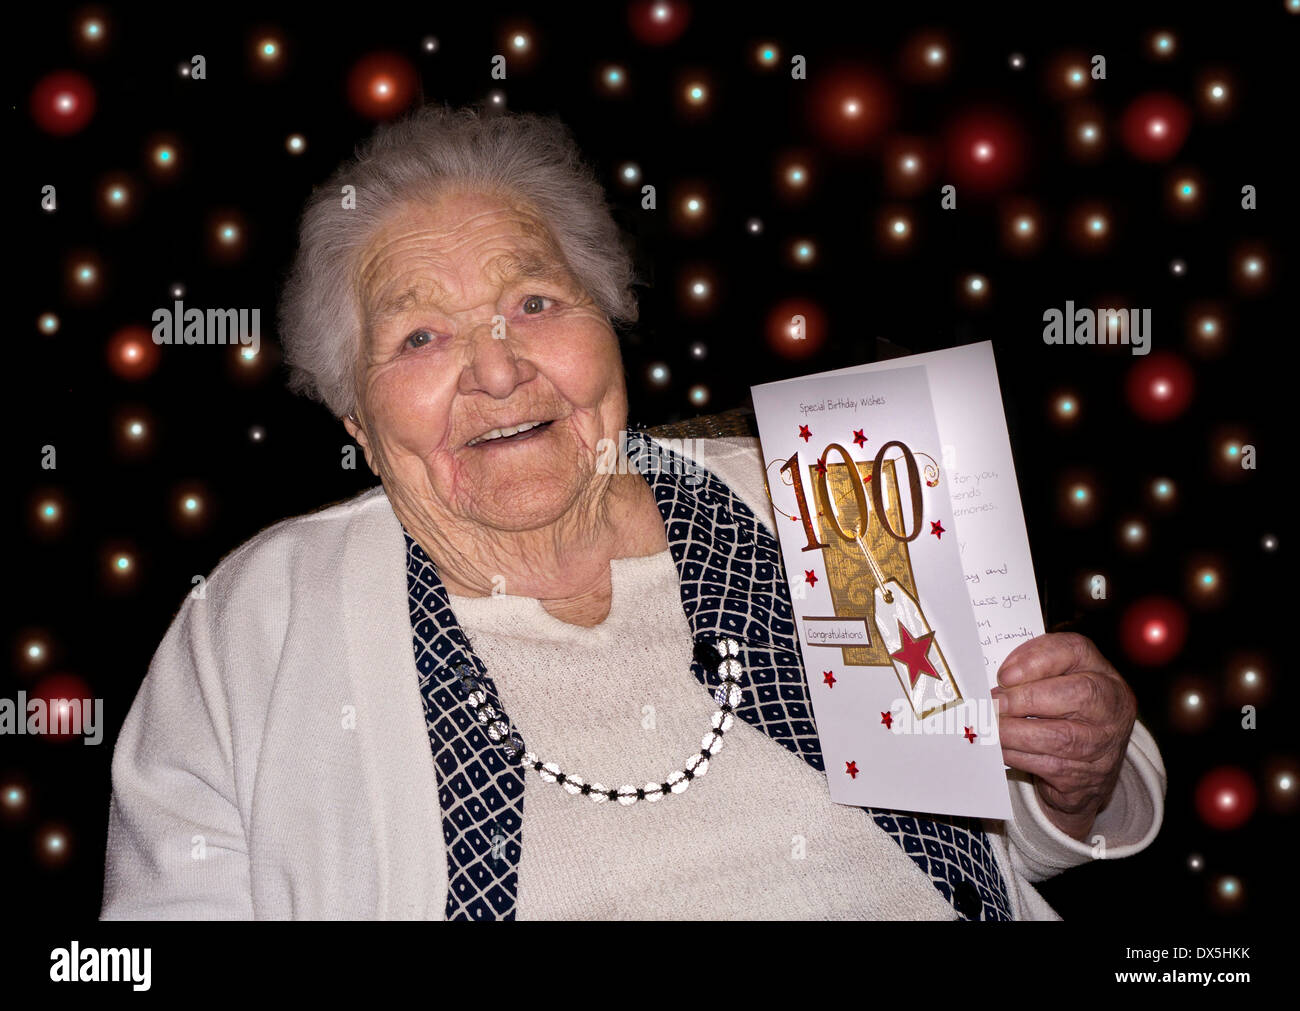 100 Jahre alt Happy Birthday Celebration lächelnd wachsam Dame mit einer '100' Glückwunschkarte & 100 farbige LED Party Lichter hinter Stockfoto